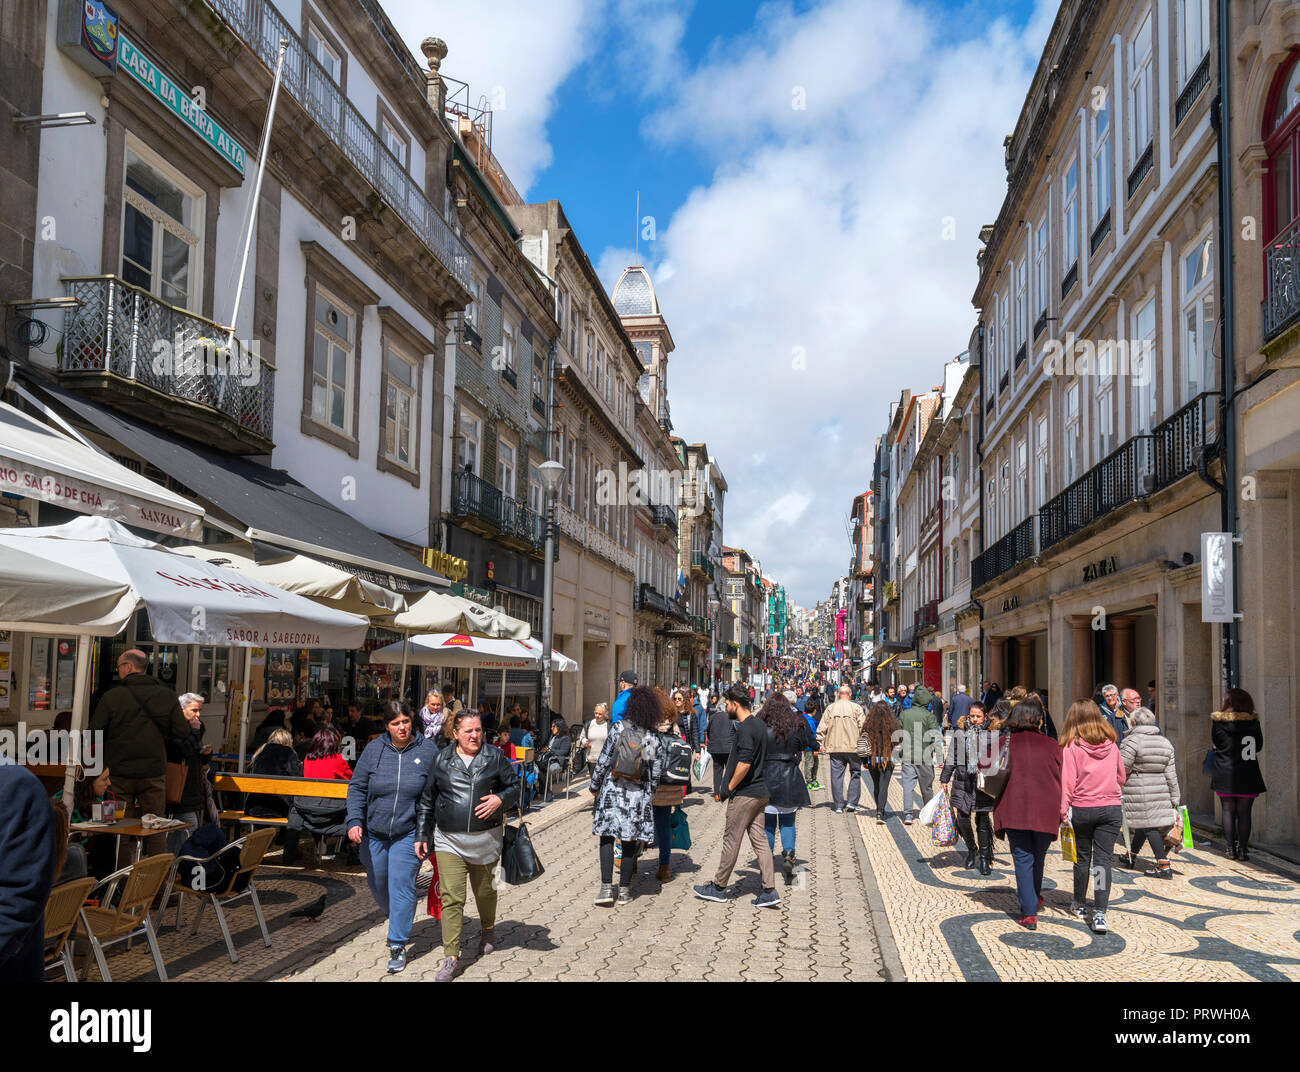 Shops and cafes on Rua de Santa Catarina in the city centre, Porto, Portugal Stock Photo